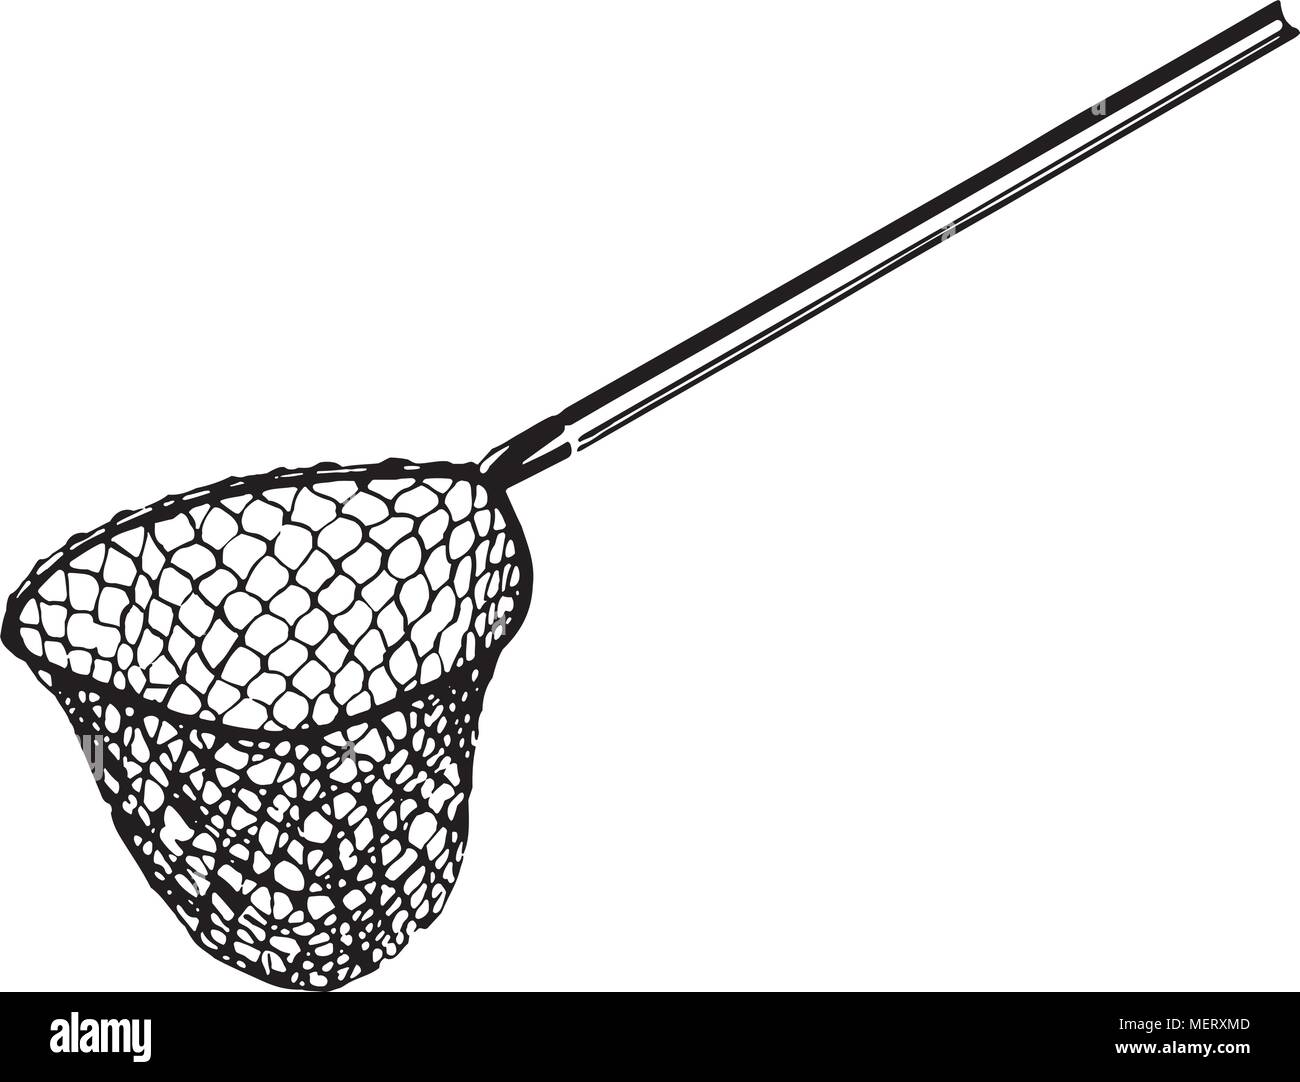 Fishing Net Stock Illustrations – 10,123 Fishing Net Stock